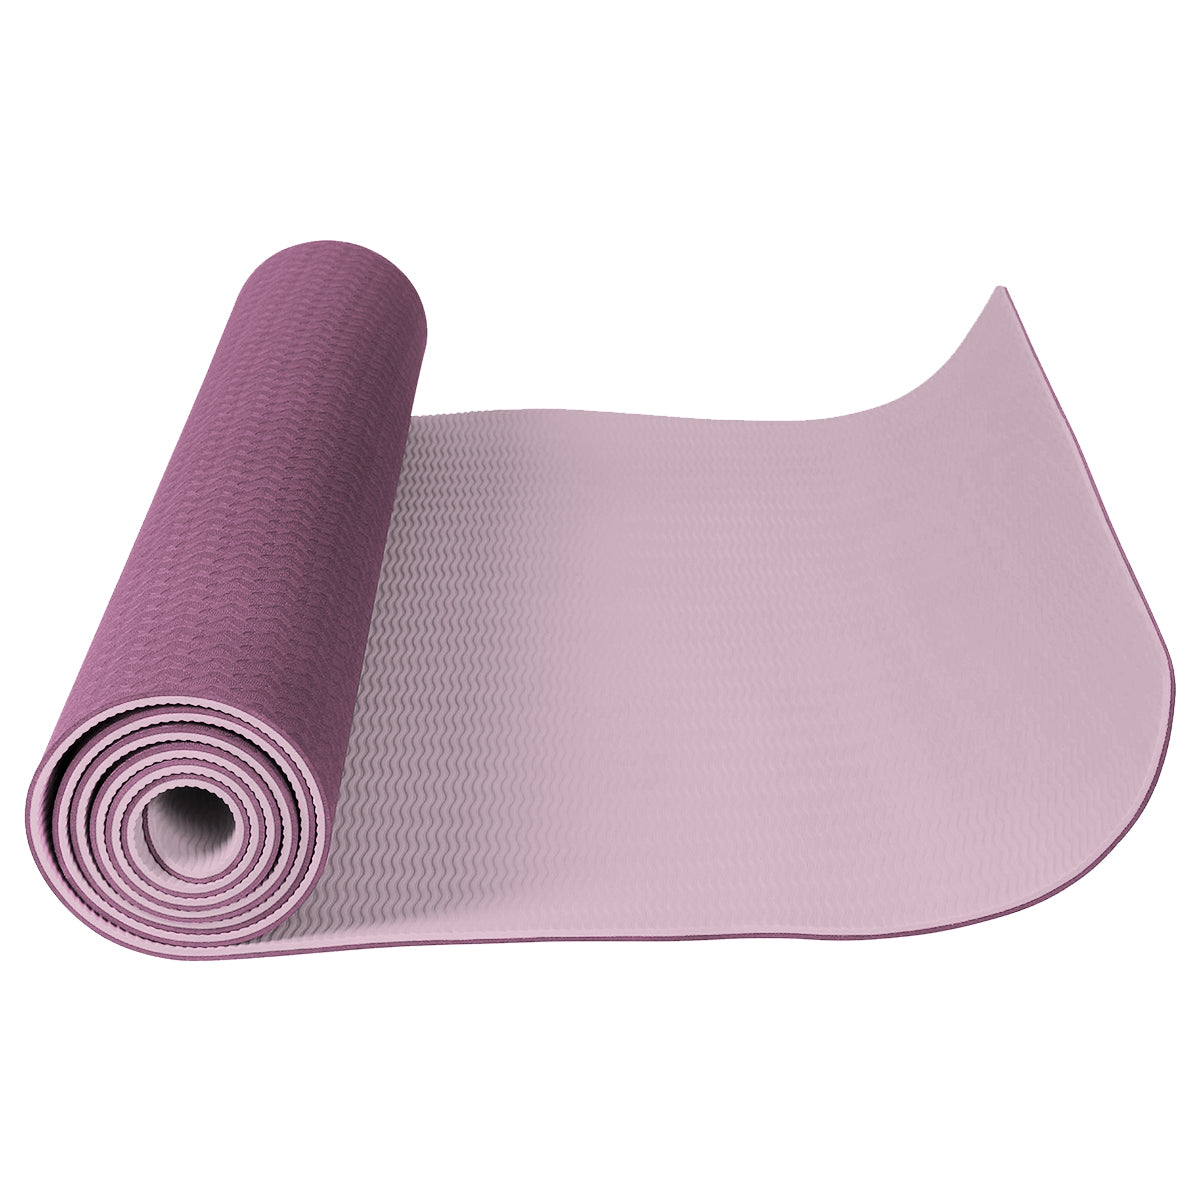 Cosmic Bear Rubber Yoga Mat for Vinyasa, Ashtanga, Pilates